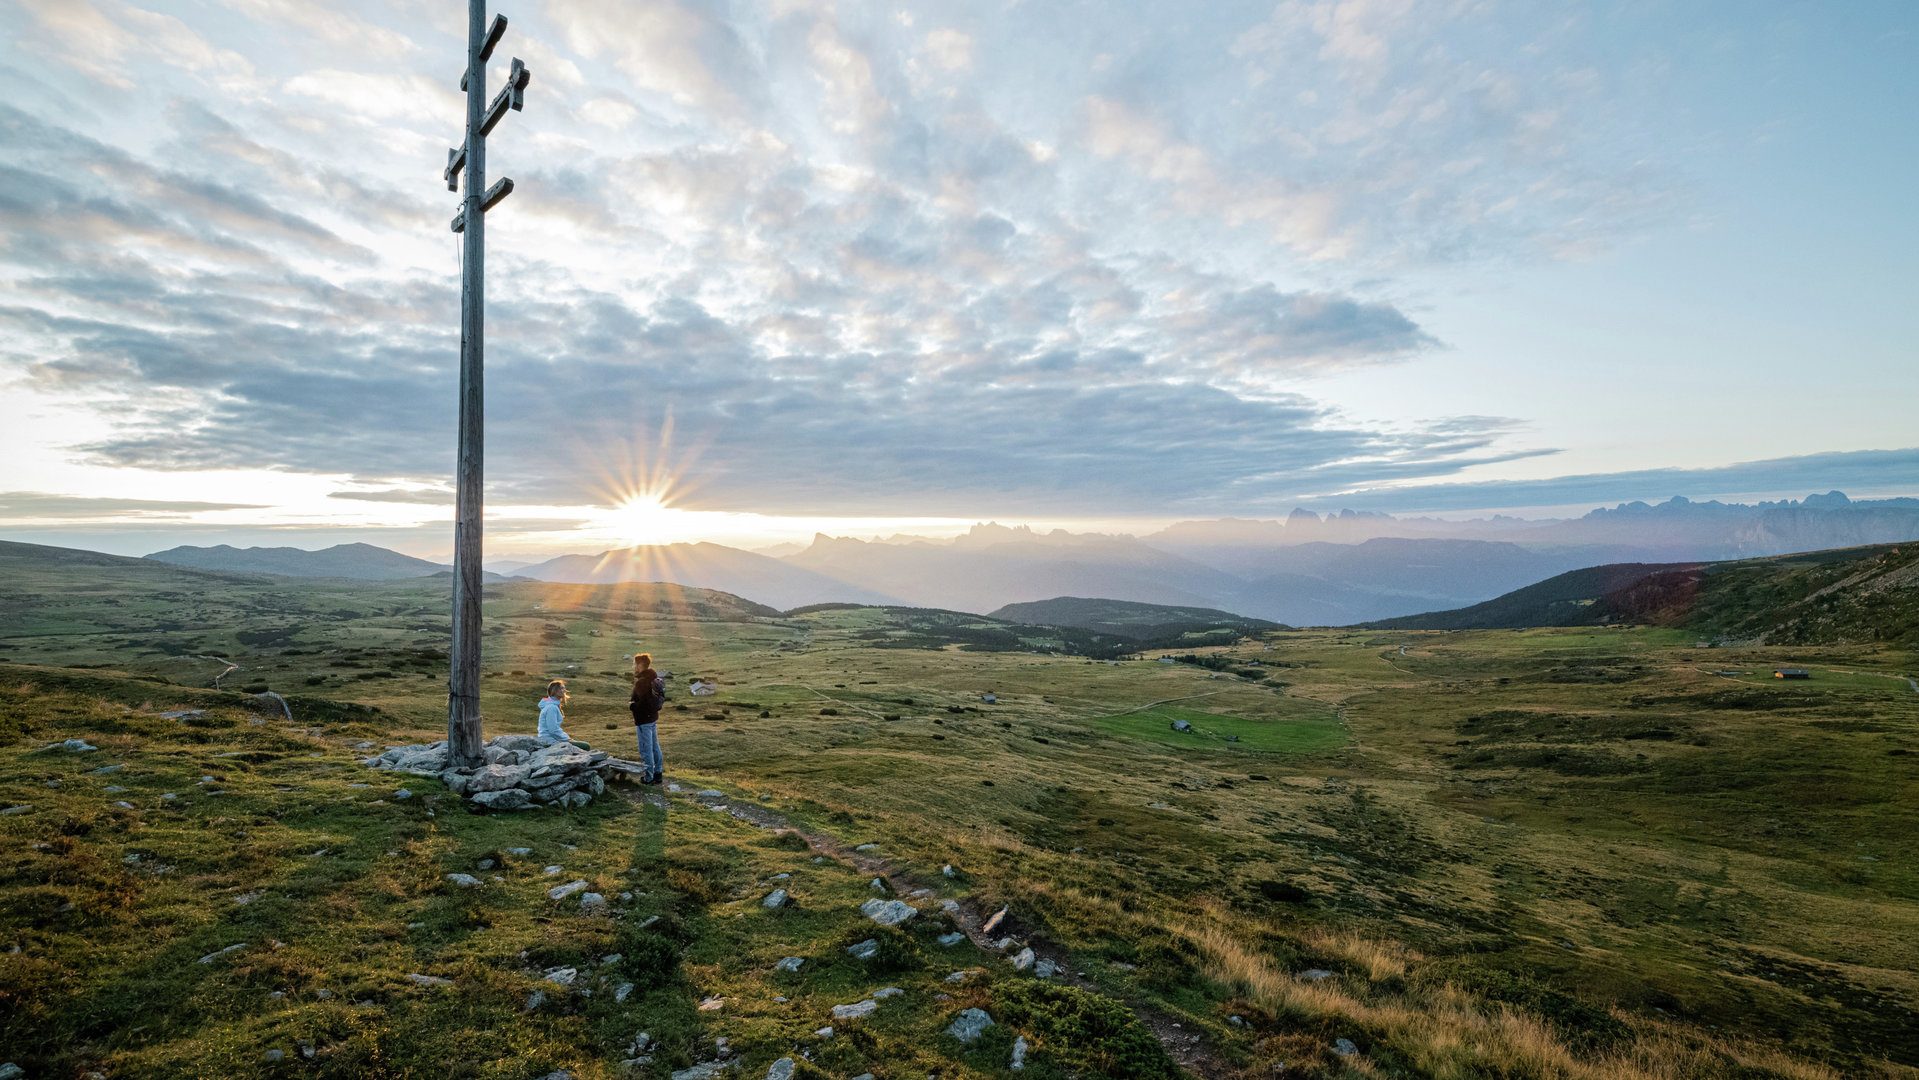 Una croce meteorologica in Alto Adige al tramonto, il panorama e il silenzio sono semplicemente magici. 